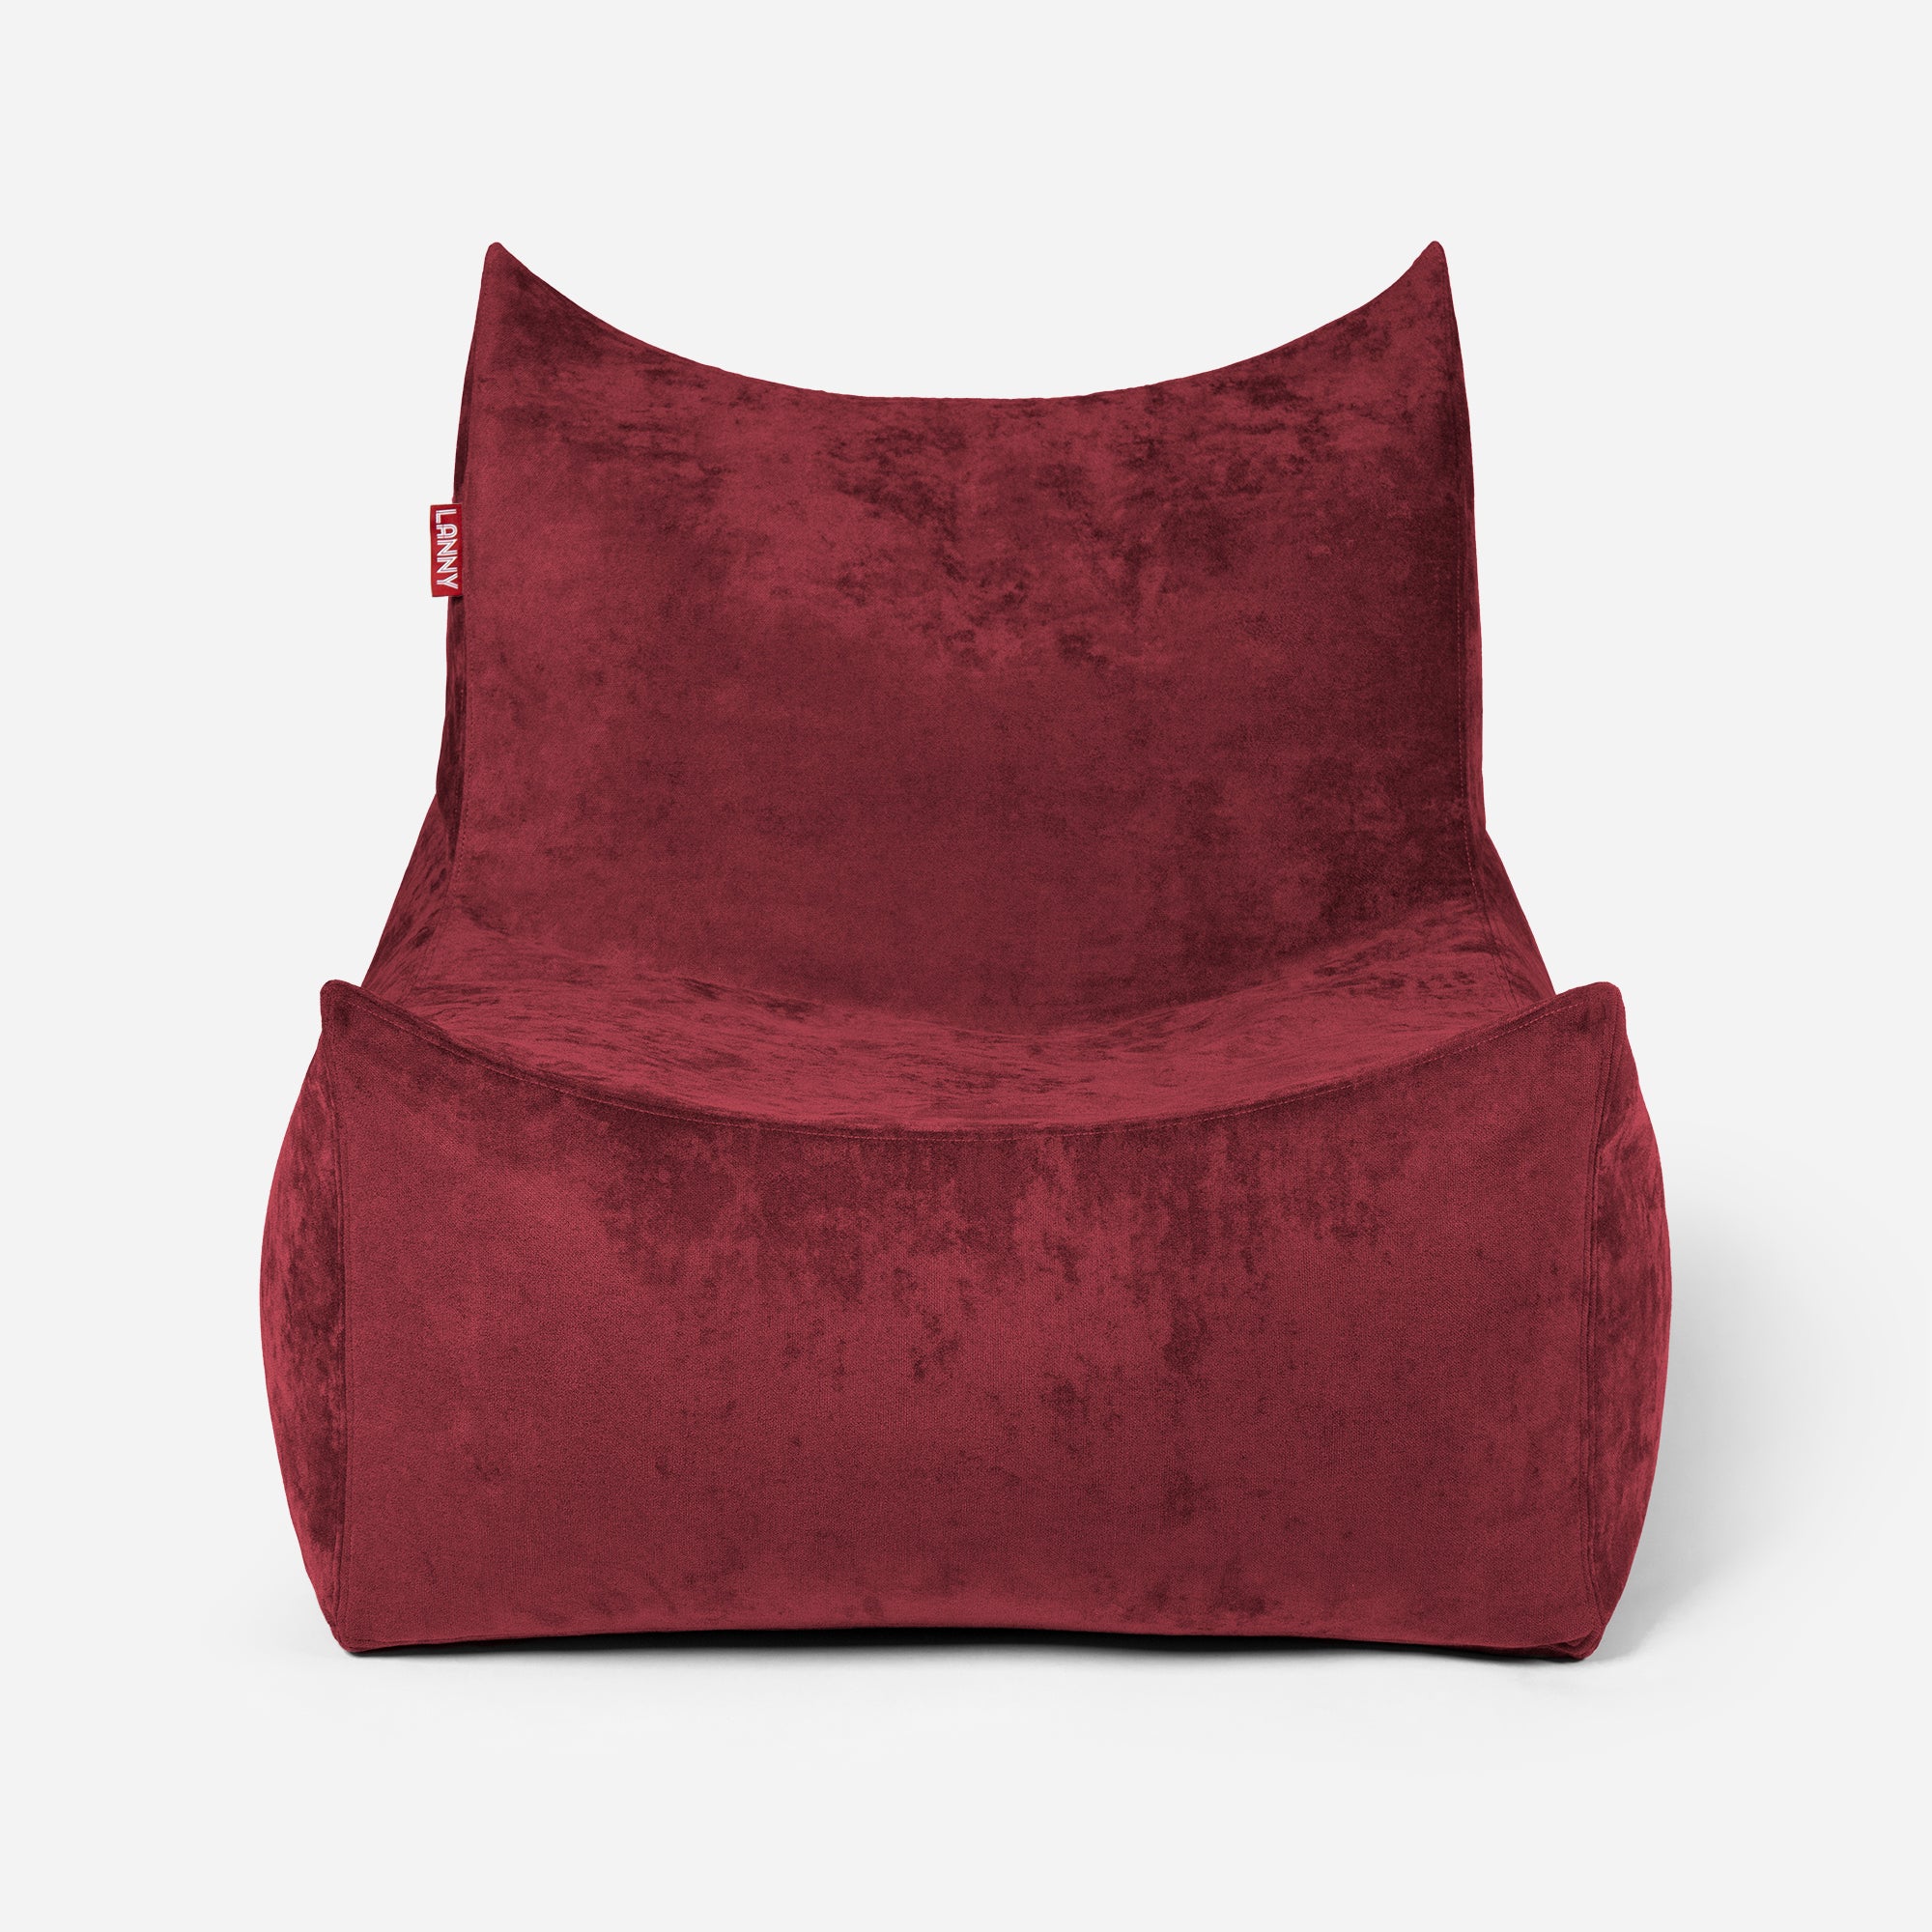 Quadro Aldo Red Bean bag Chair